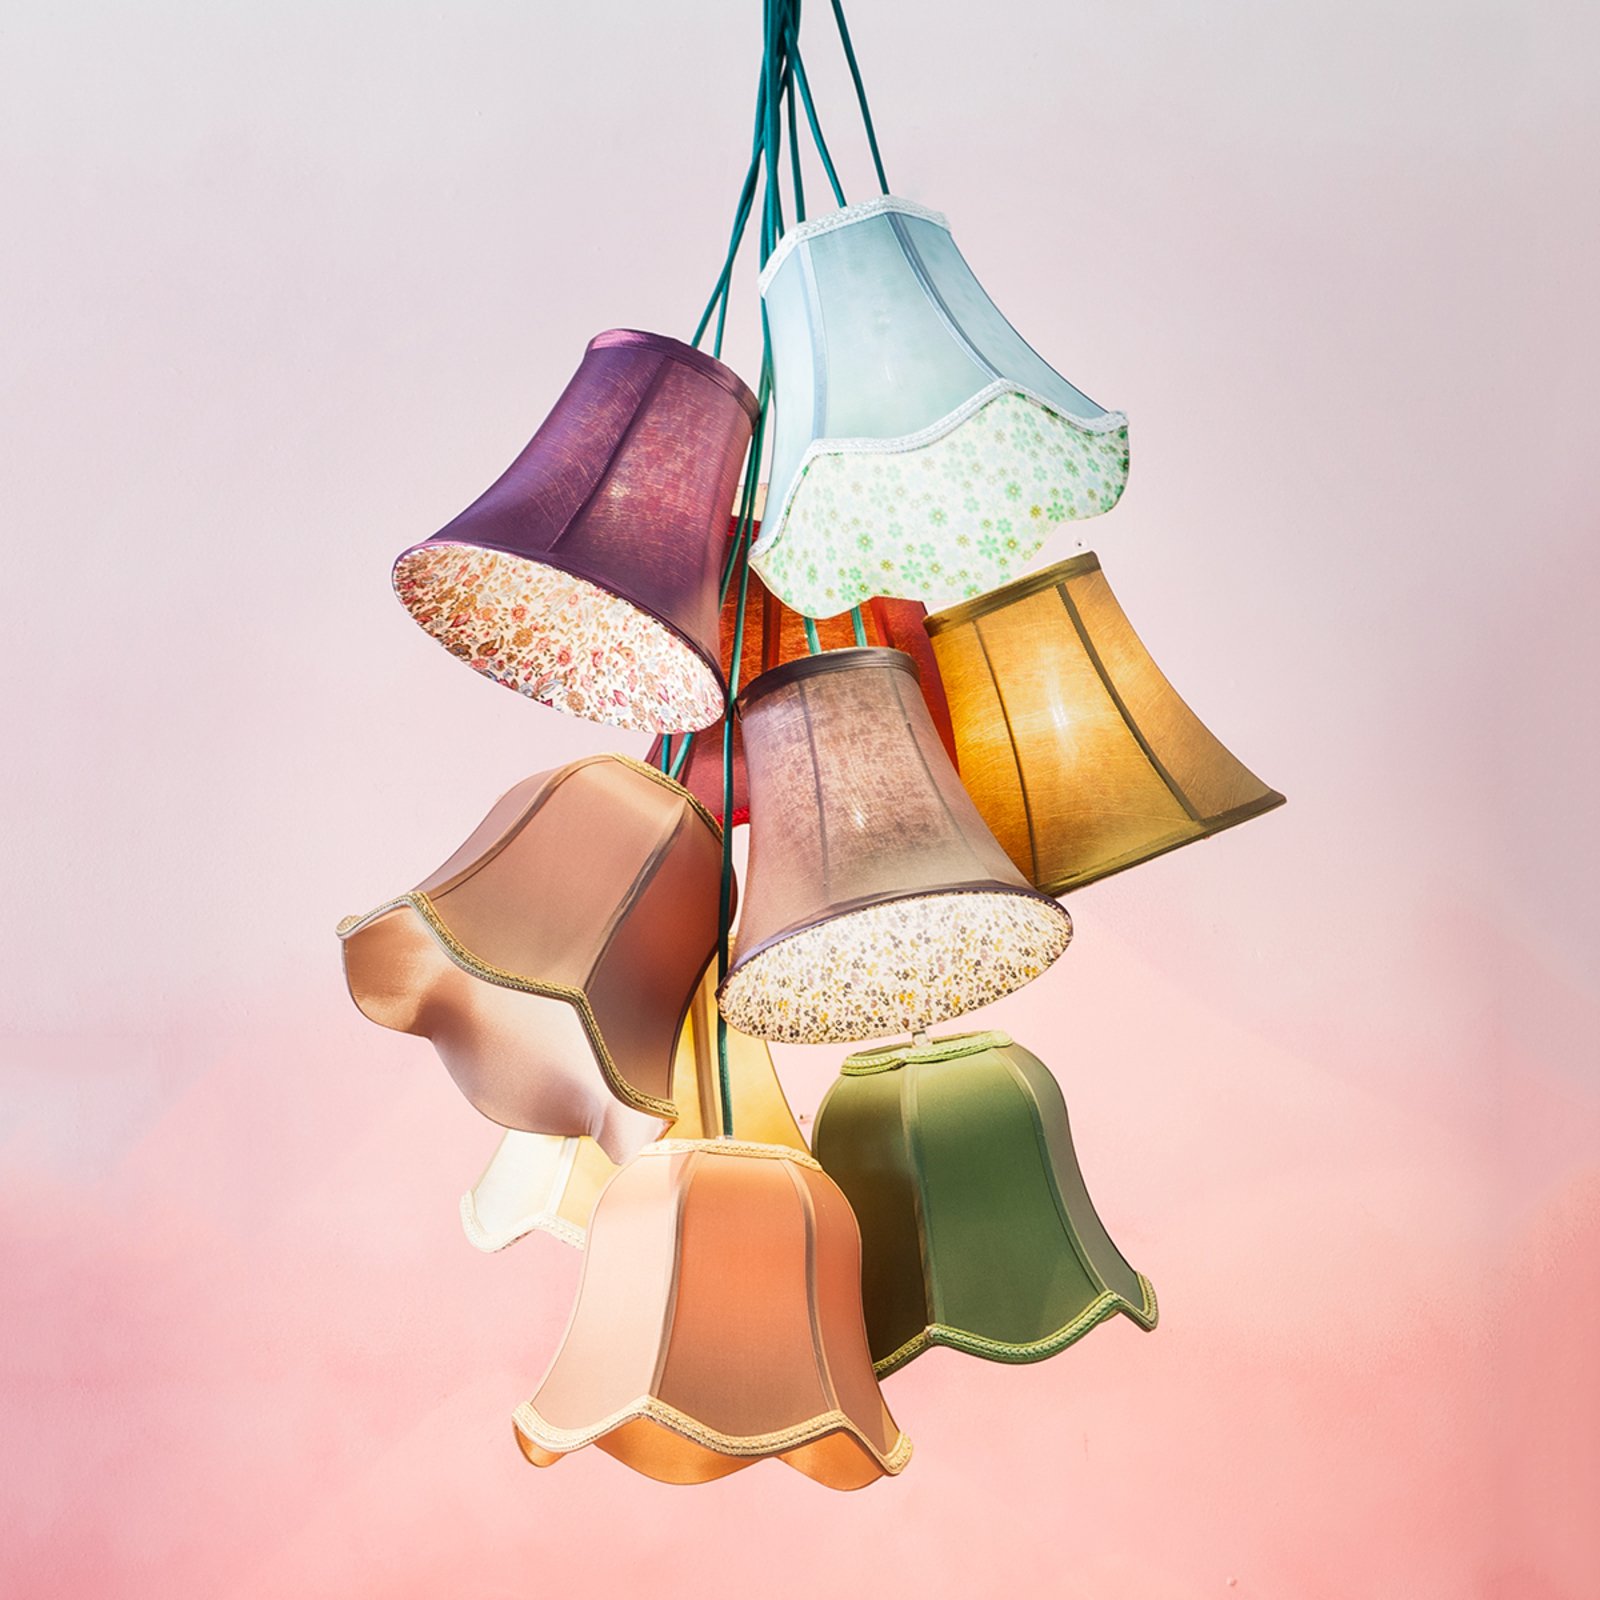 KAREN SALOON - kleurrijke hanglamp